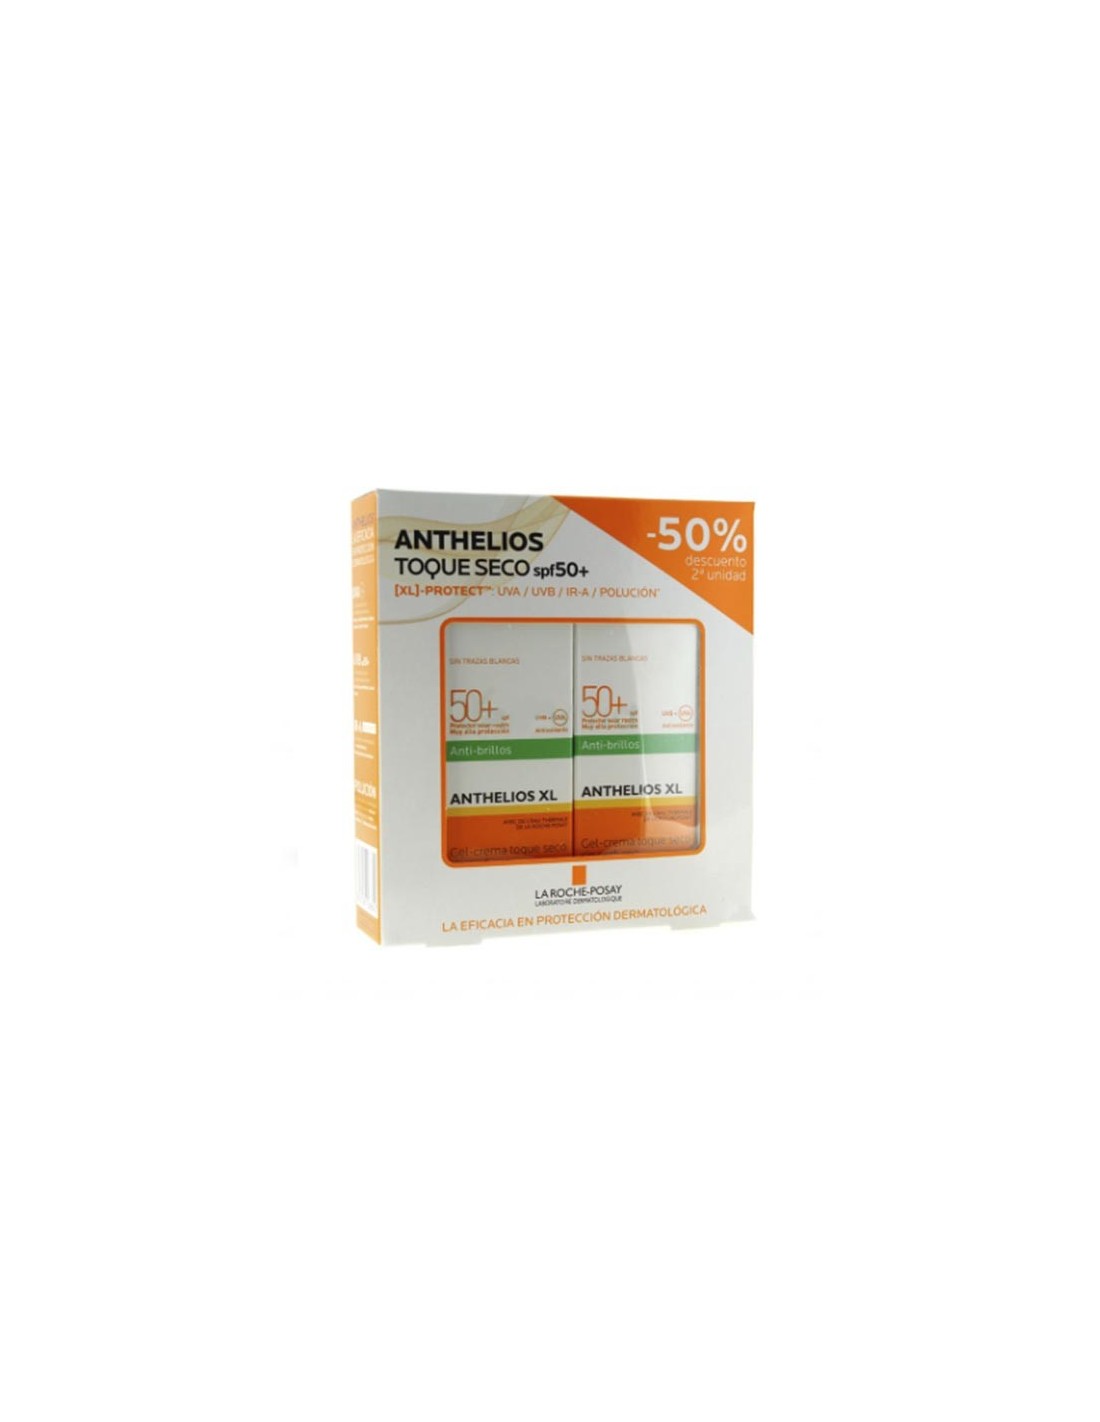 Anthelios Duplo Gel Crema Toque Seco Antibrillos  Spf50+ 2x50ml